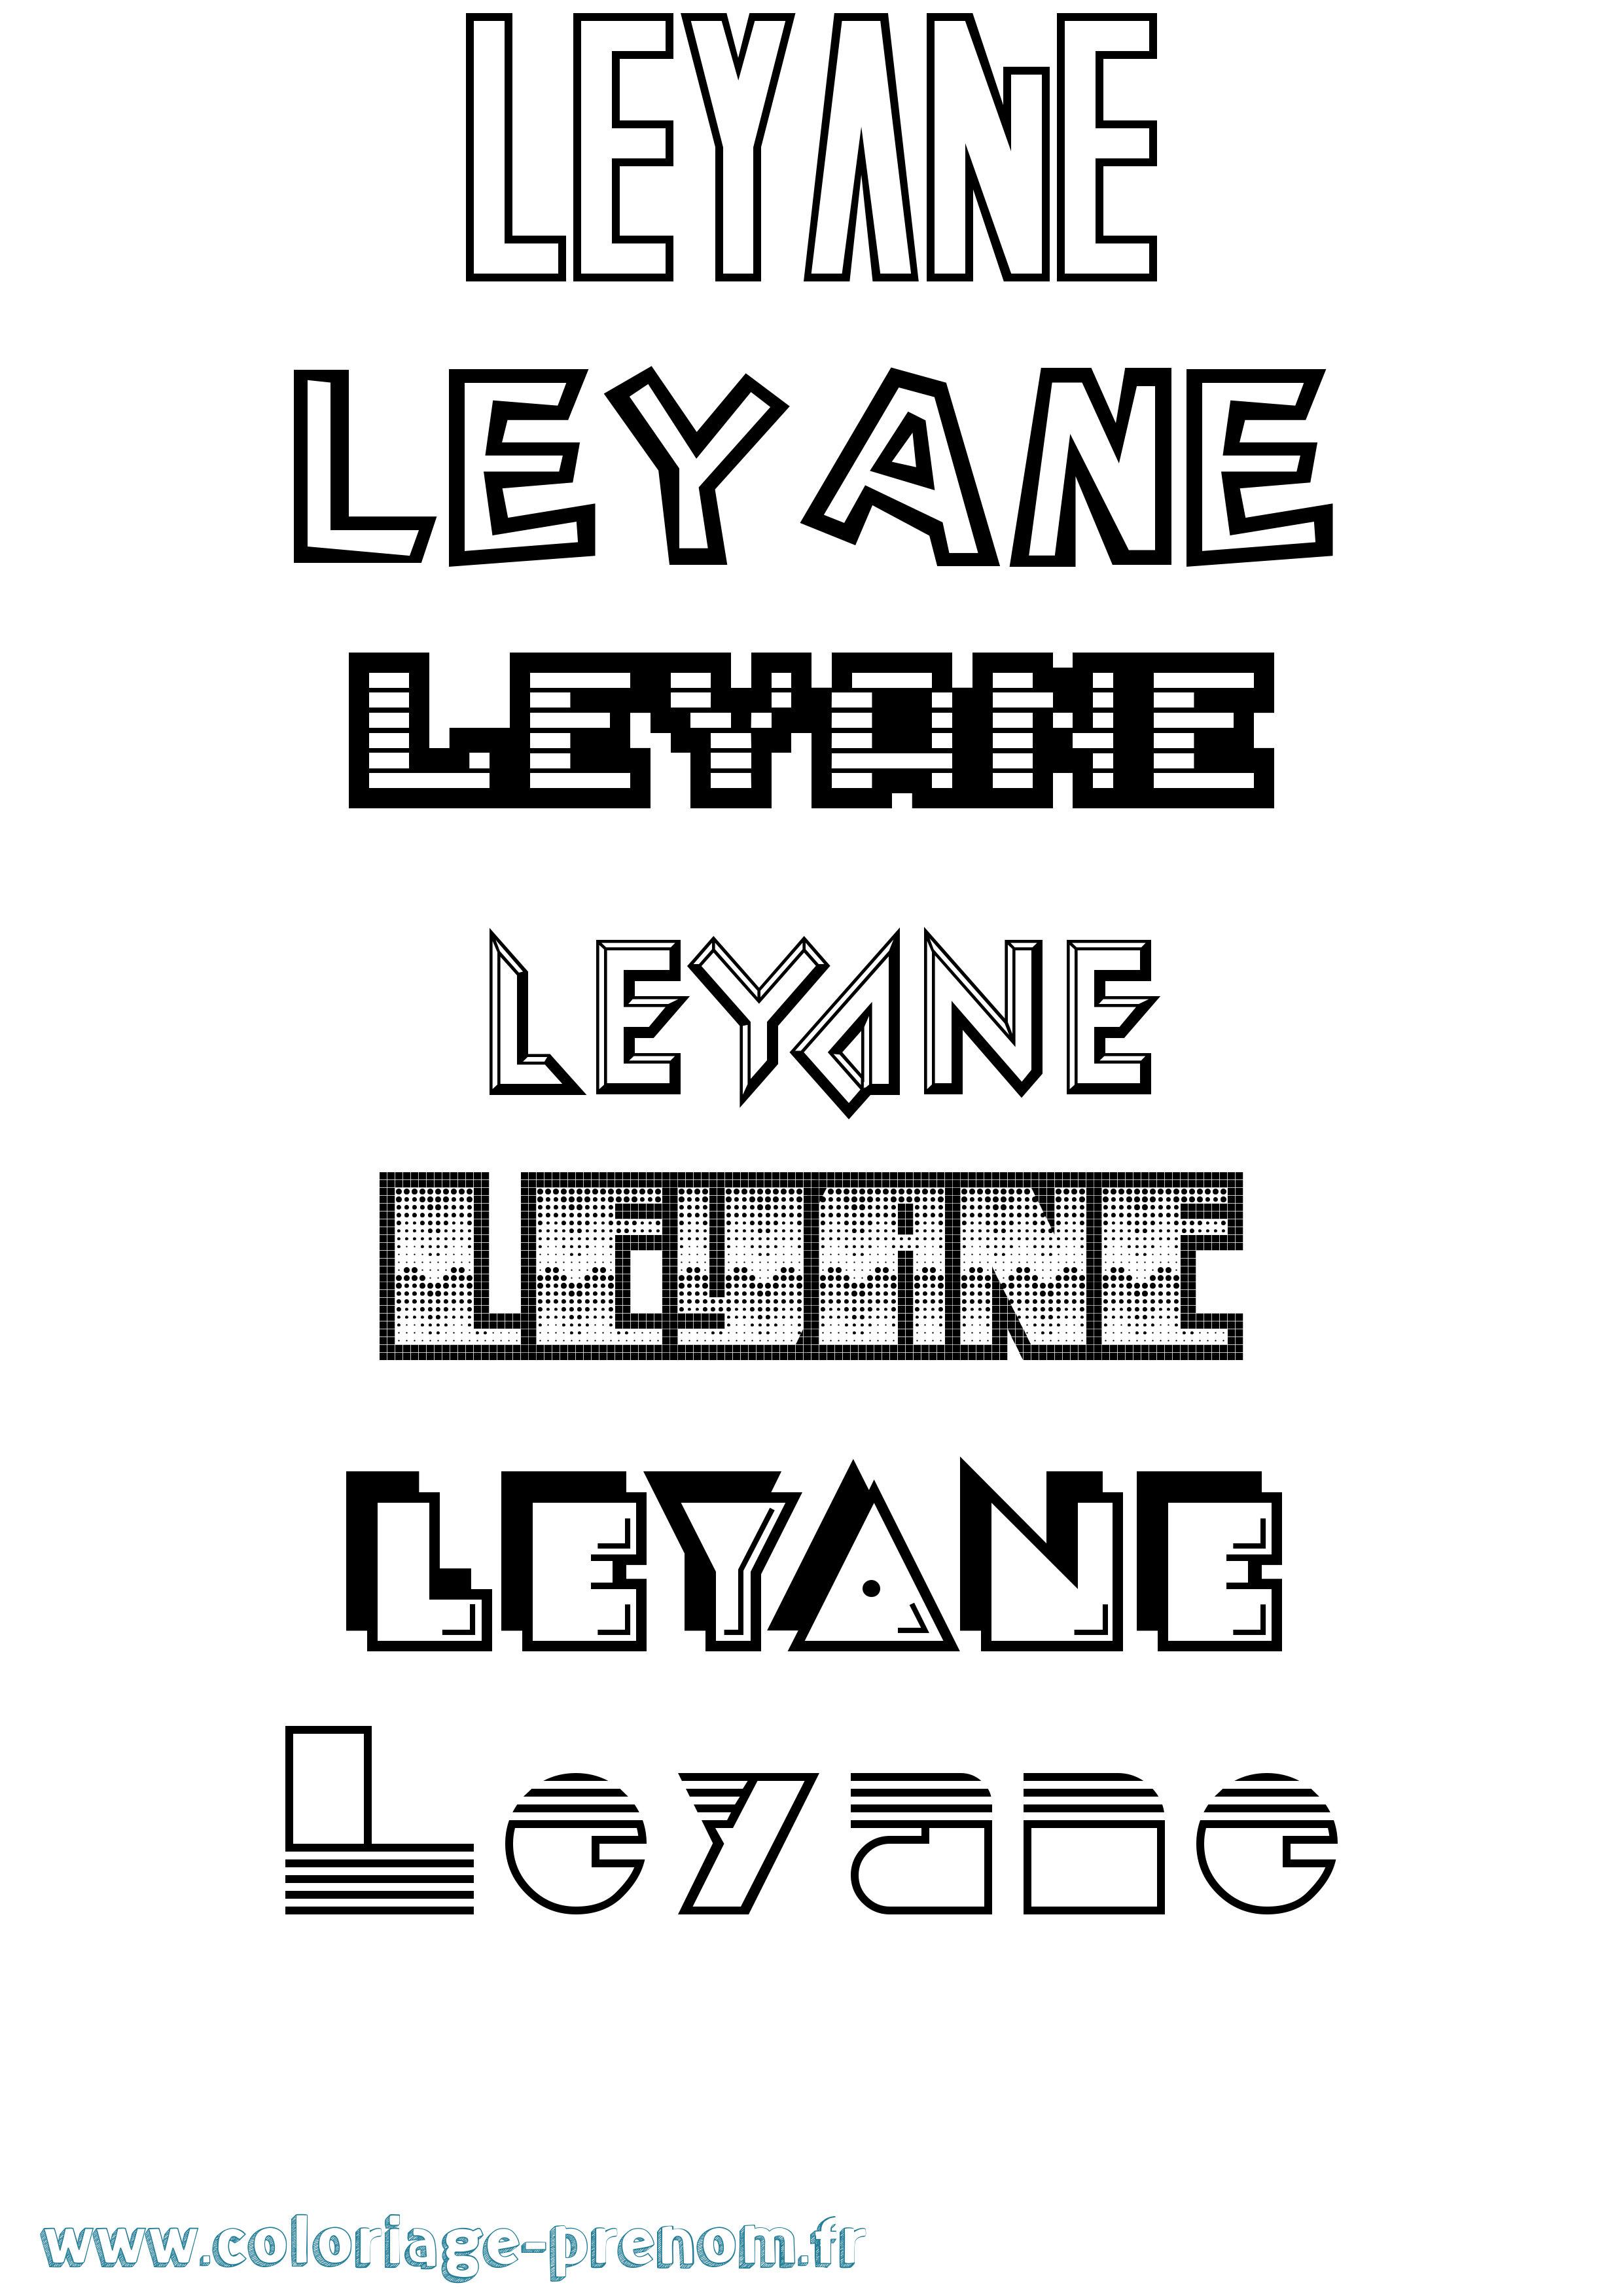 Coloriage prénom Leyane Jeux Vidéos